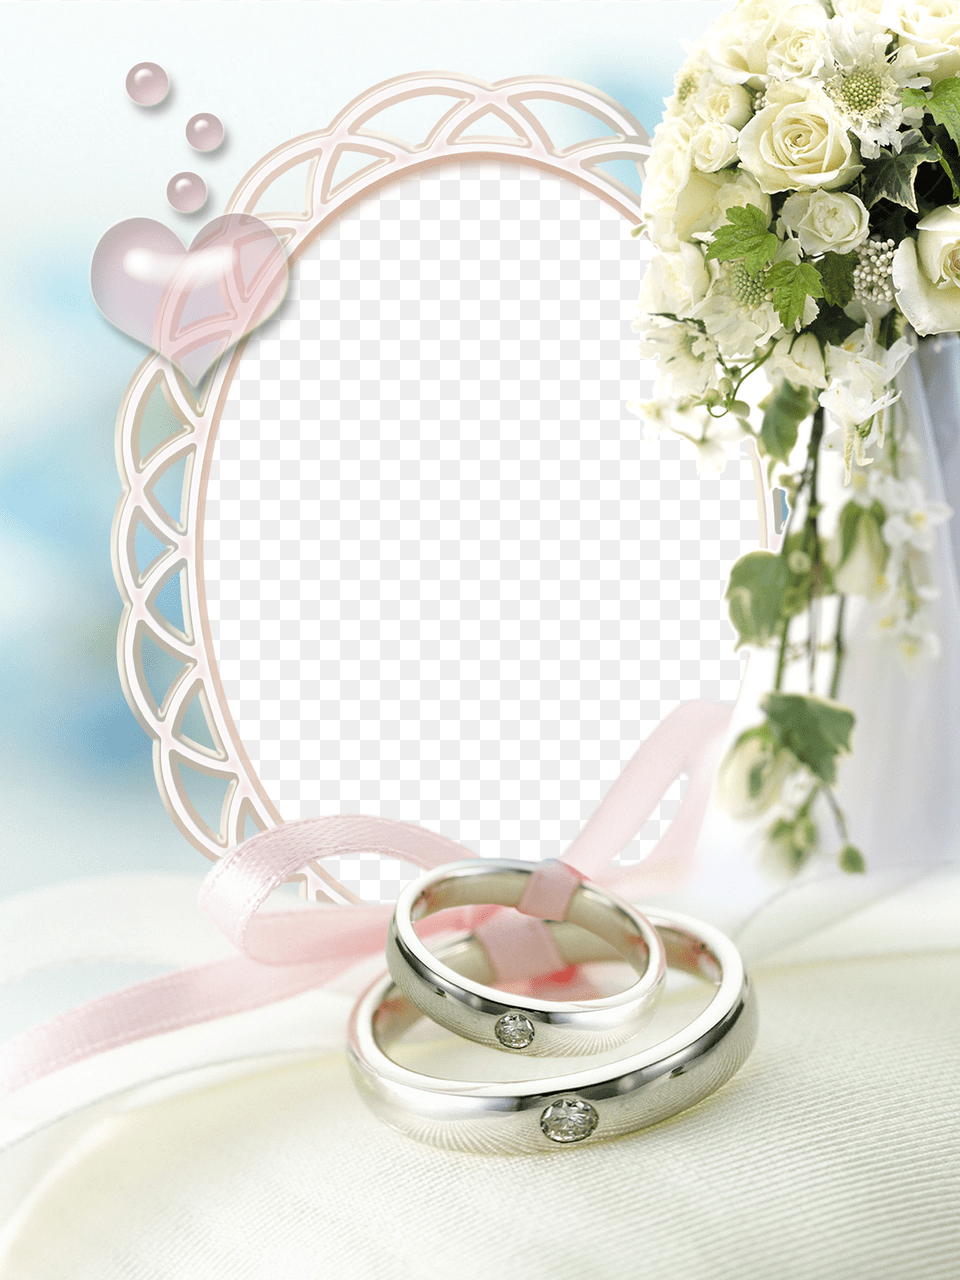 Floral Border Oval Wedding Picture Frame Frames And Wedding Frames, Accessories, Plant, Rose, Flower Arrangement Png Image